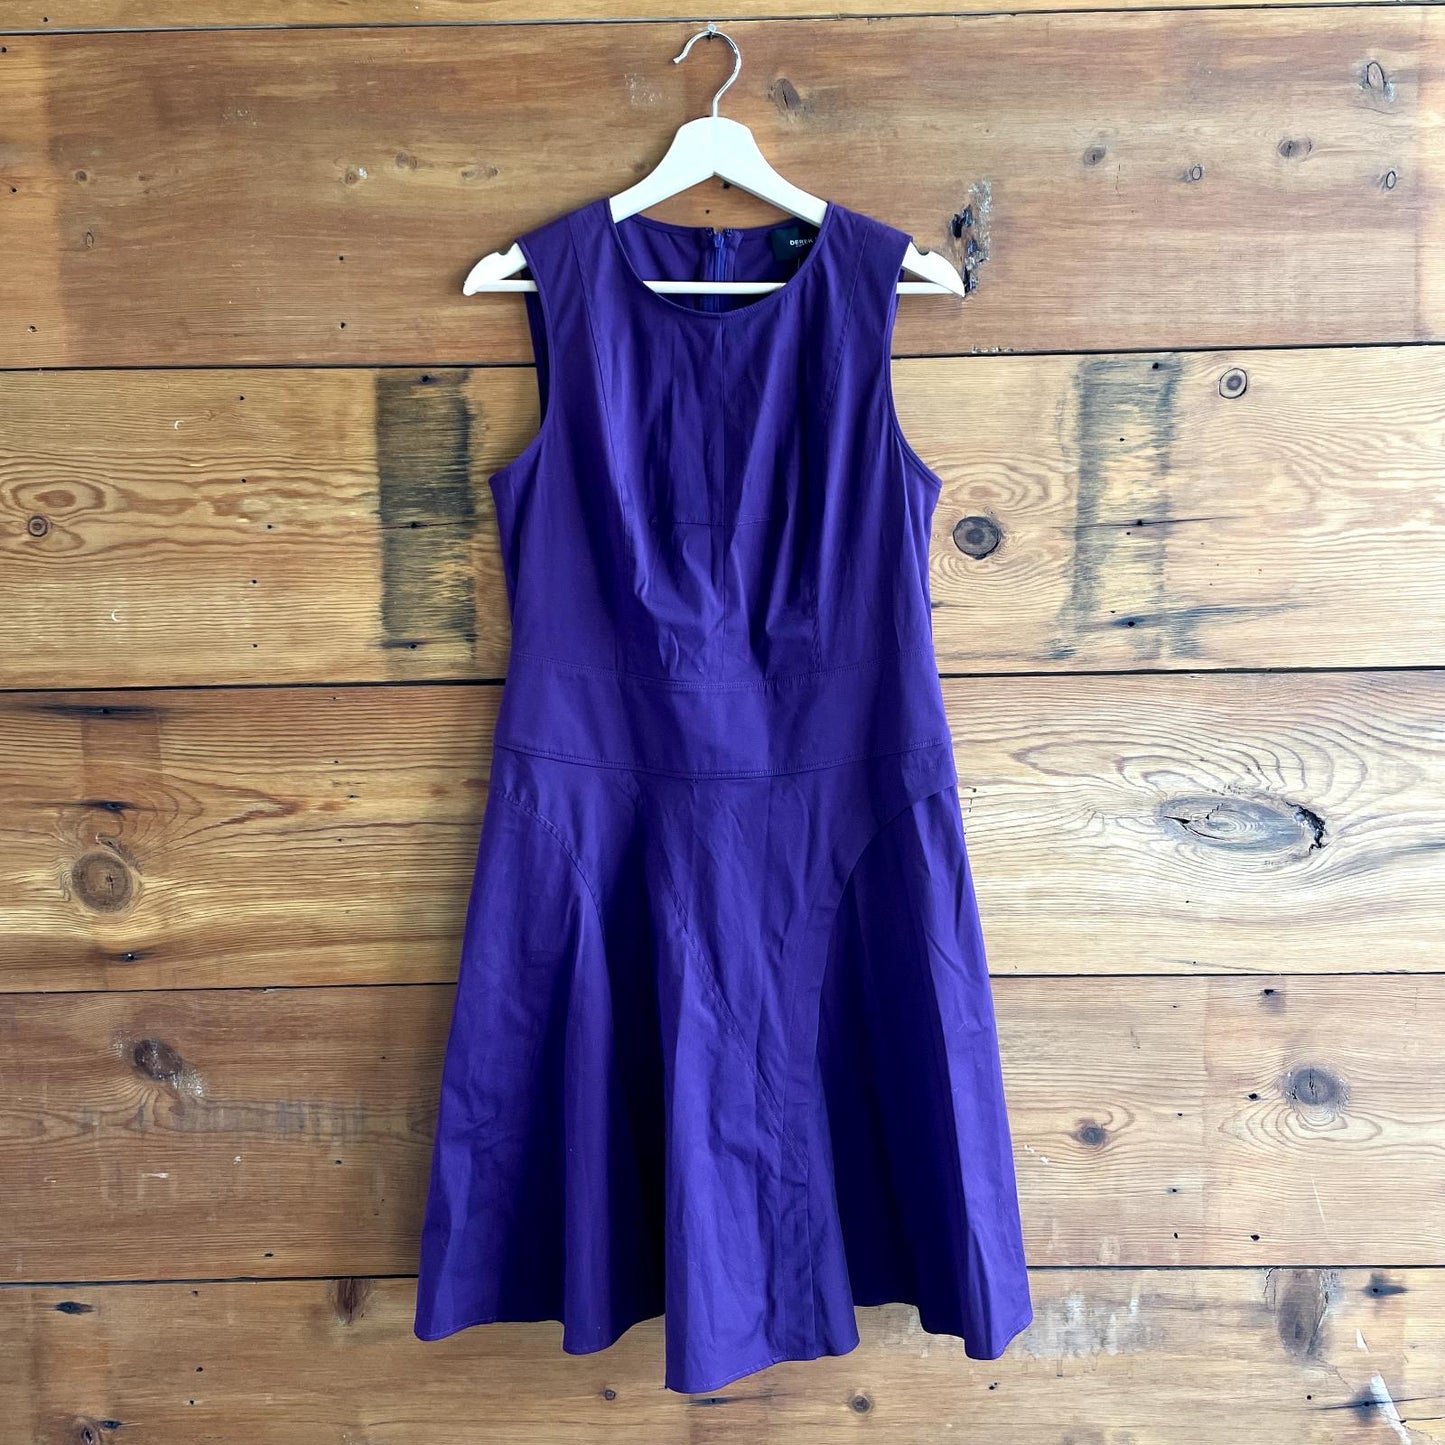 6/8 - Derek Lam $245 Purple Sleeveless Stretch Cotton A Line Dress NEW 1217BT